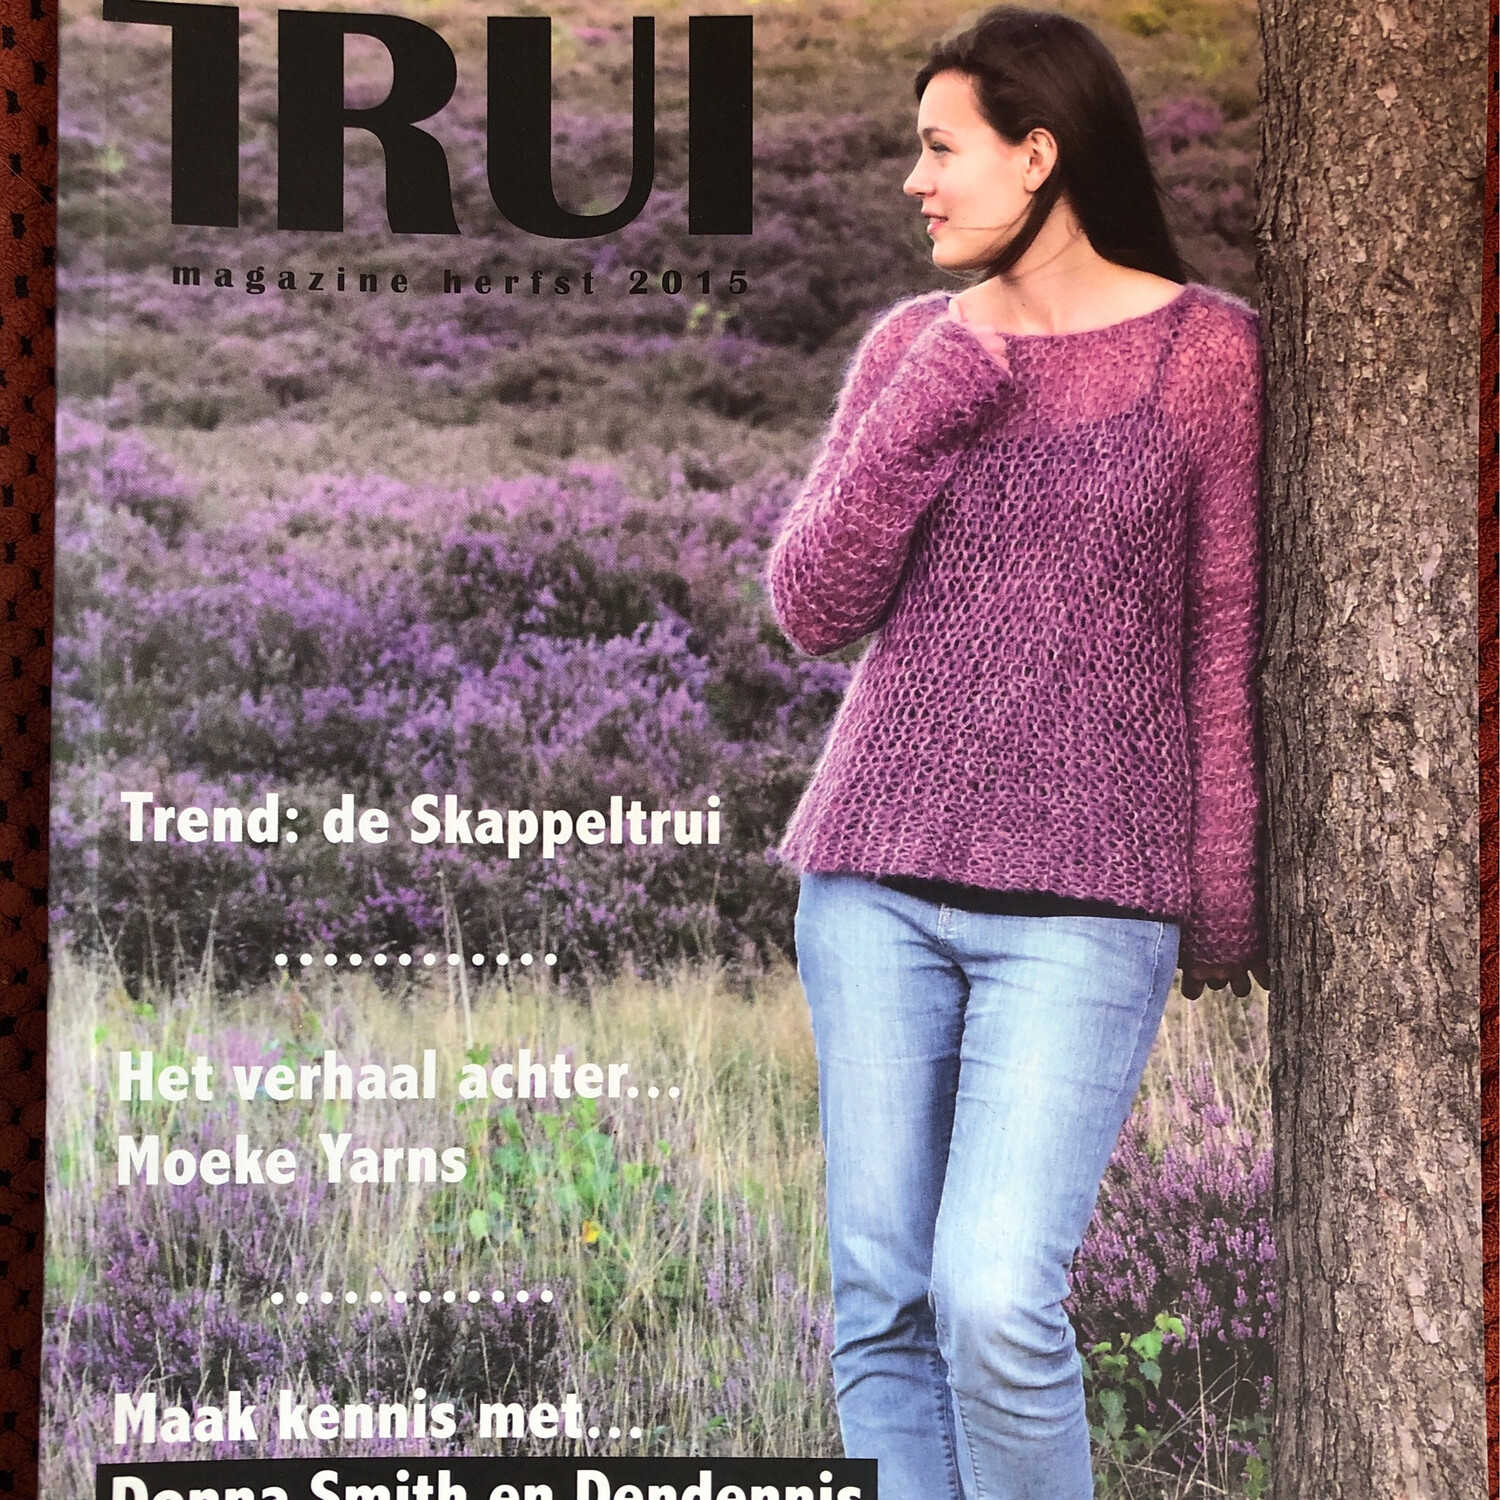 Trui magazine herfst 2015